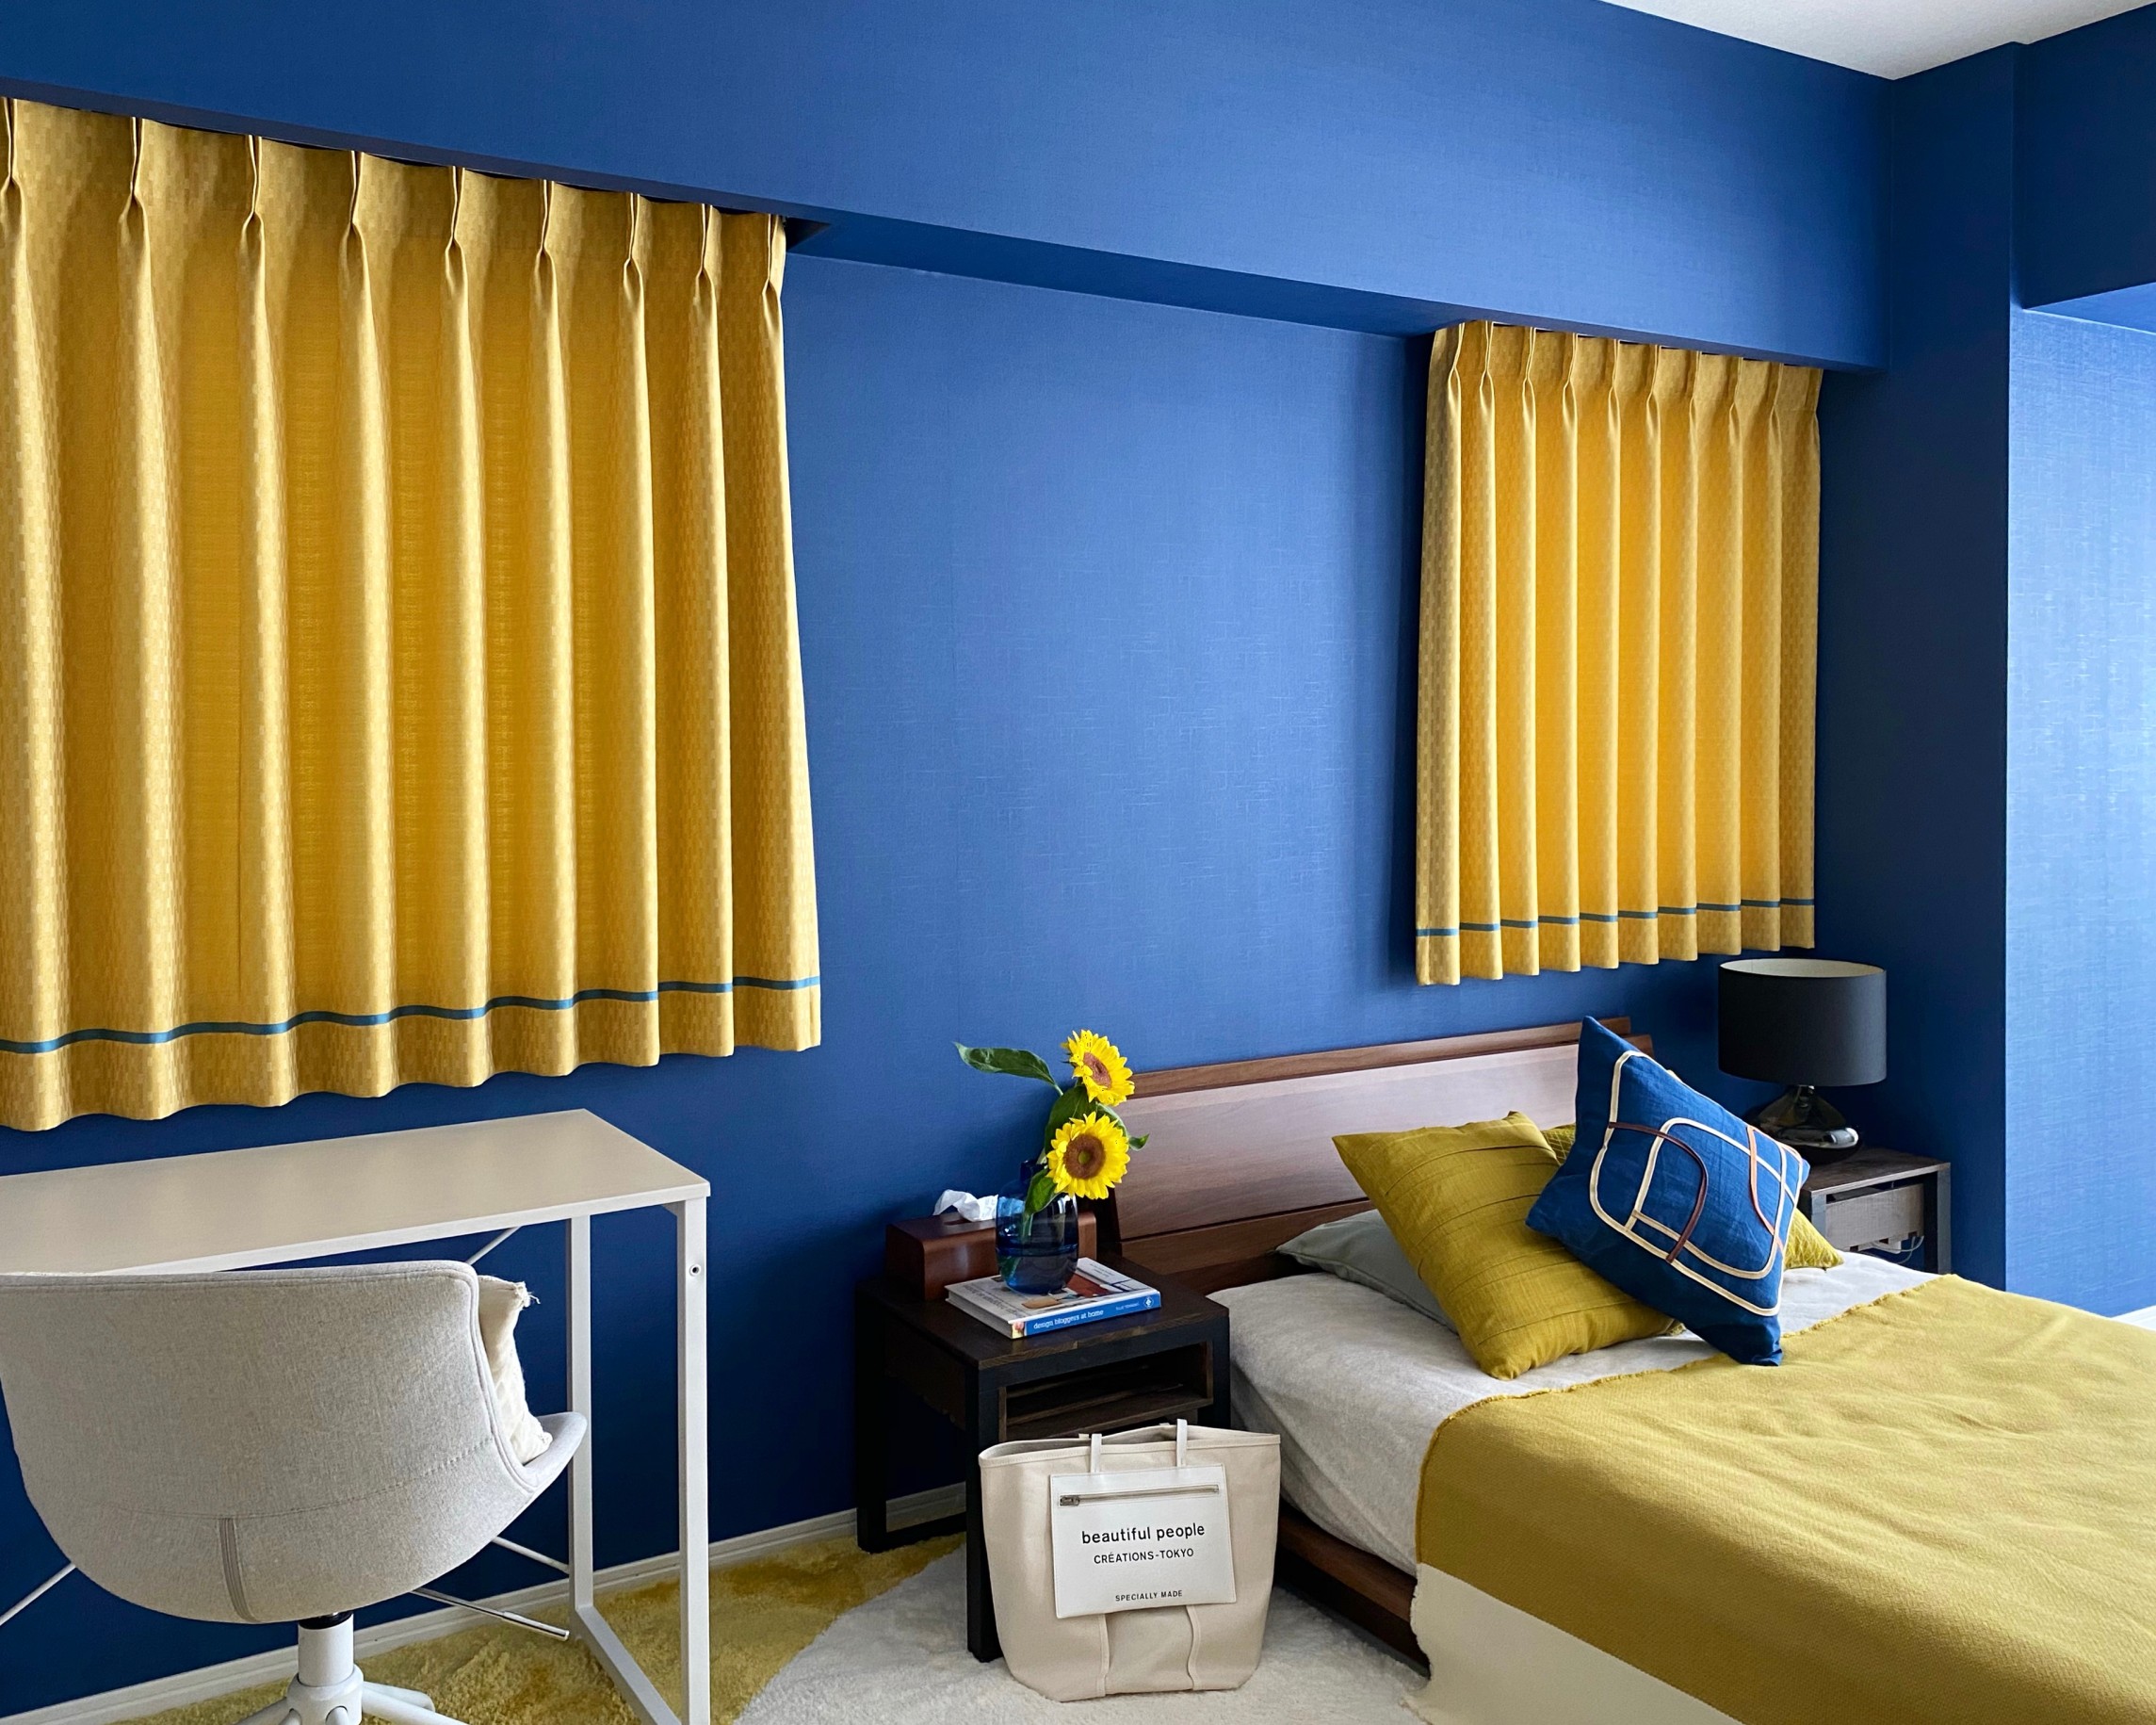 おしゃれで個性的な寝室インテリアの作り方 5畳 12畳 東京のマンション 個人邸のアート インテリアデザイン Studio Del Sol